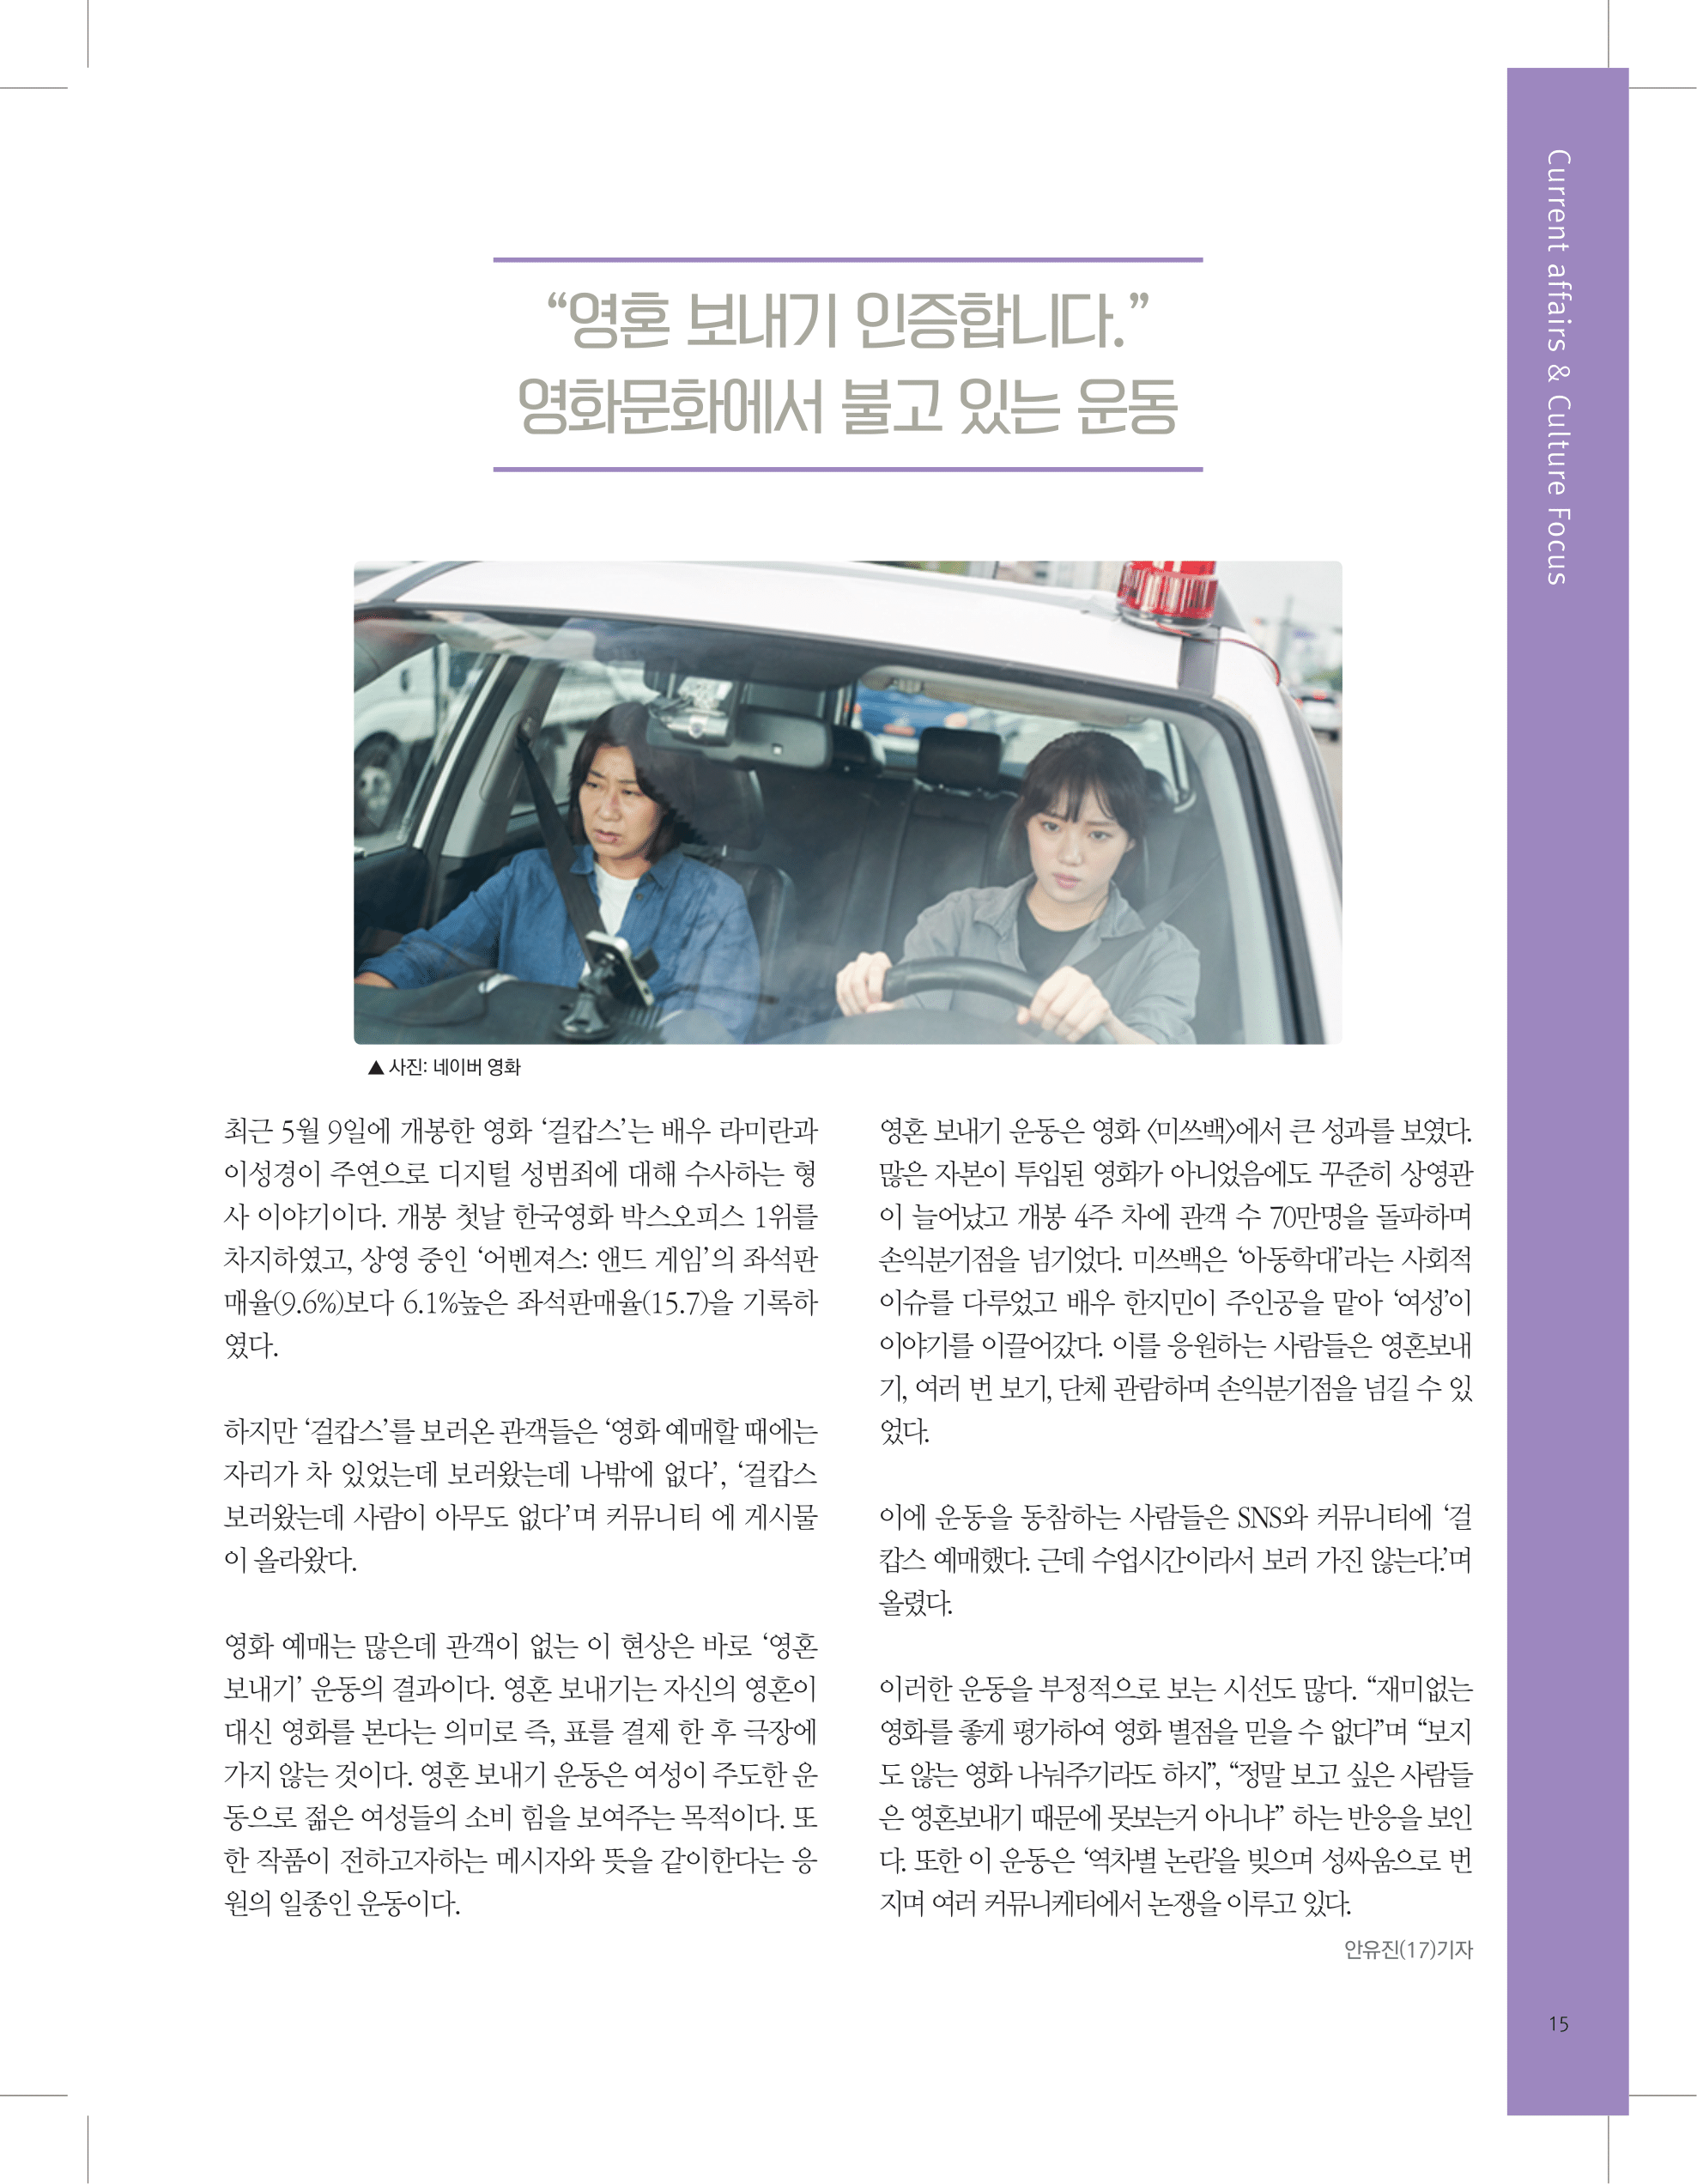 뜻새김 신문 73호 15